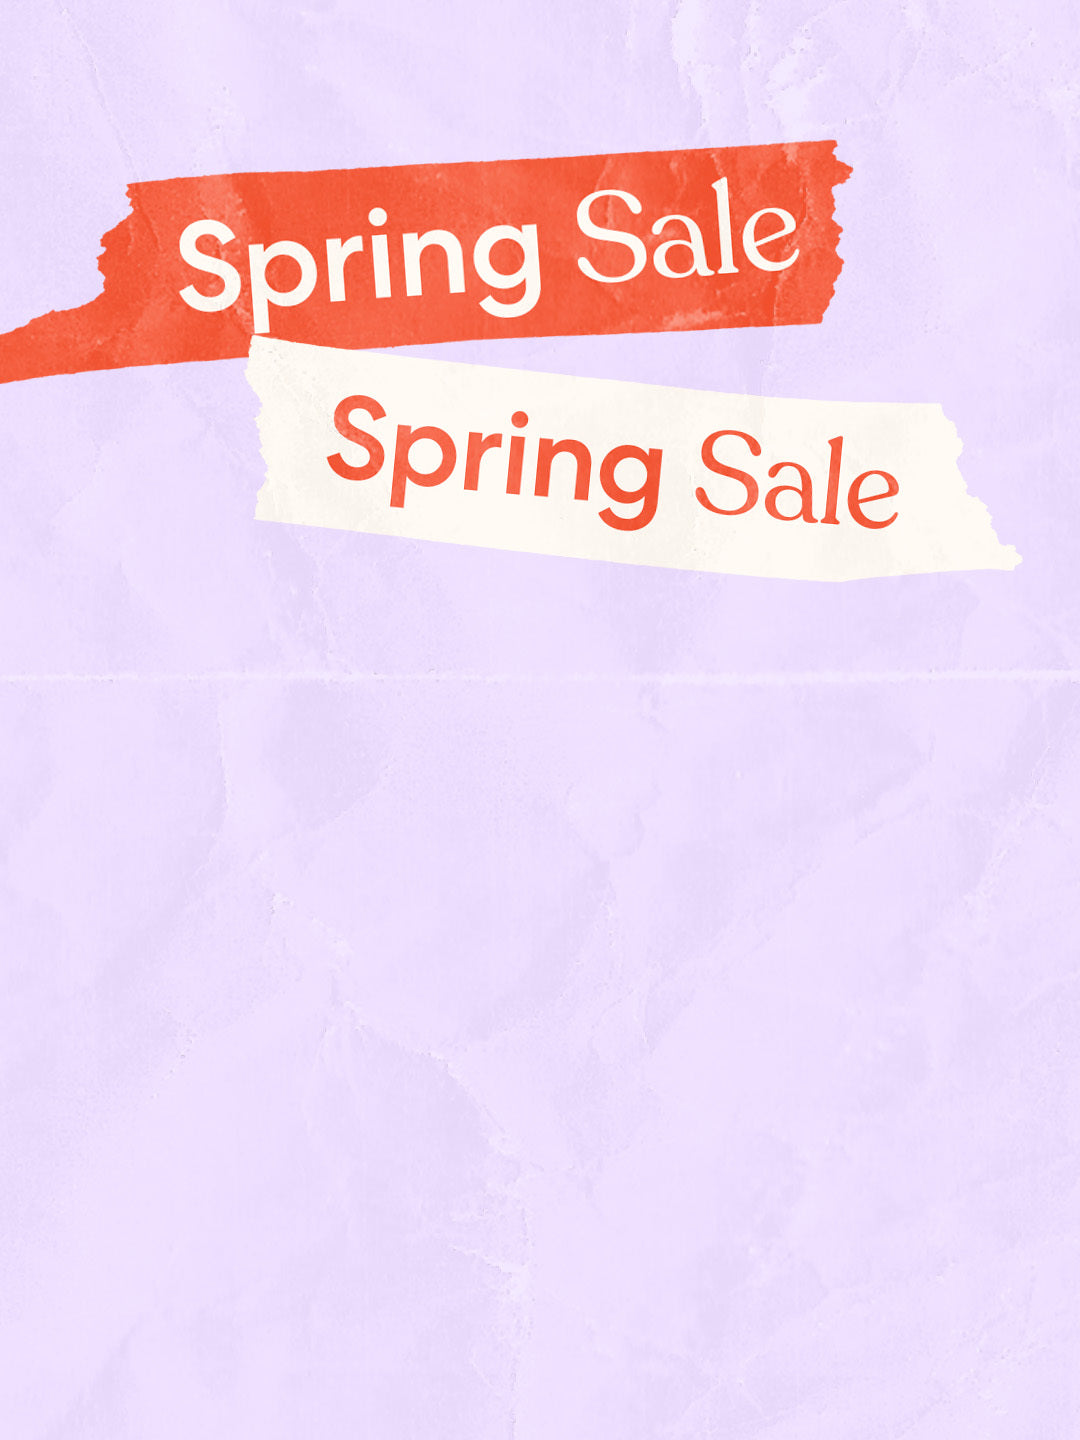 spring-sale-shorts-oceansapart-banner-image-mobile.jpg